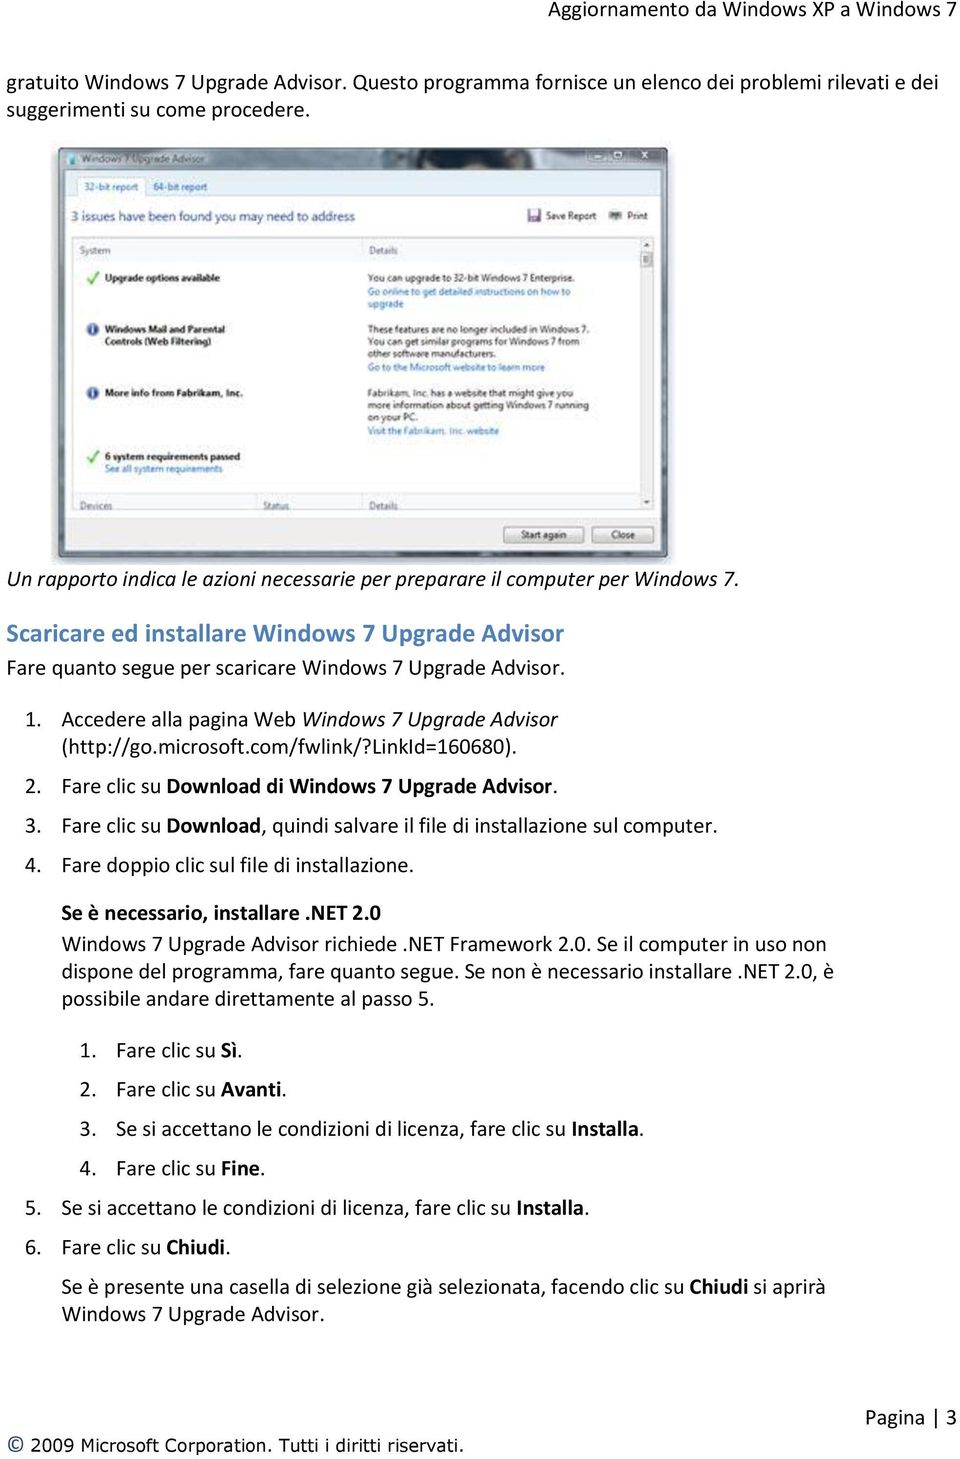 Accedere alla pagina Web Windows 7 Upgrade Advisor (http://go.microsoft.com/fwlink/?linkid=160680). 2. Fare clic su Download di Windows 7 Upgrade Advisor. 3.